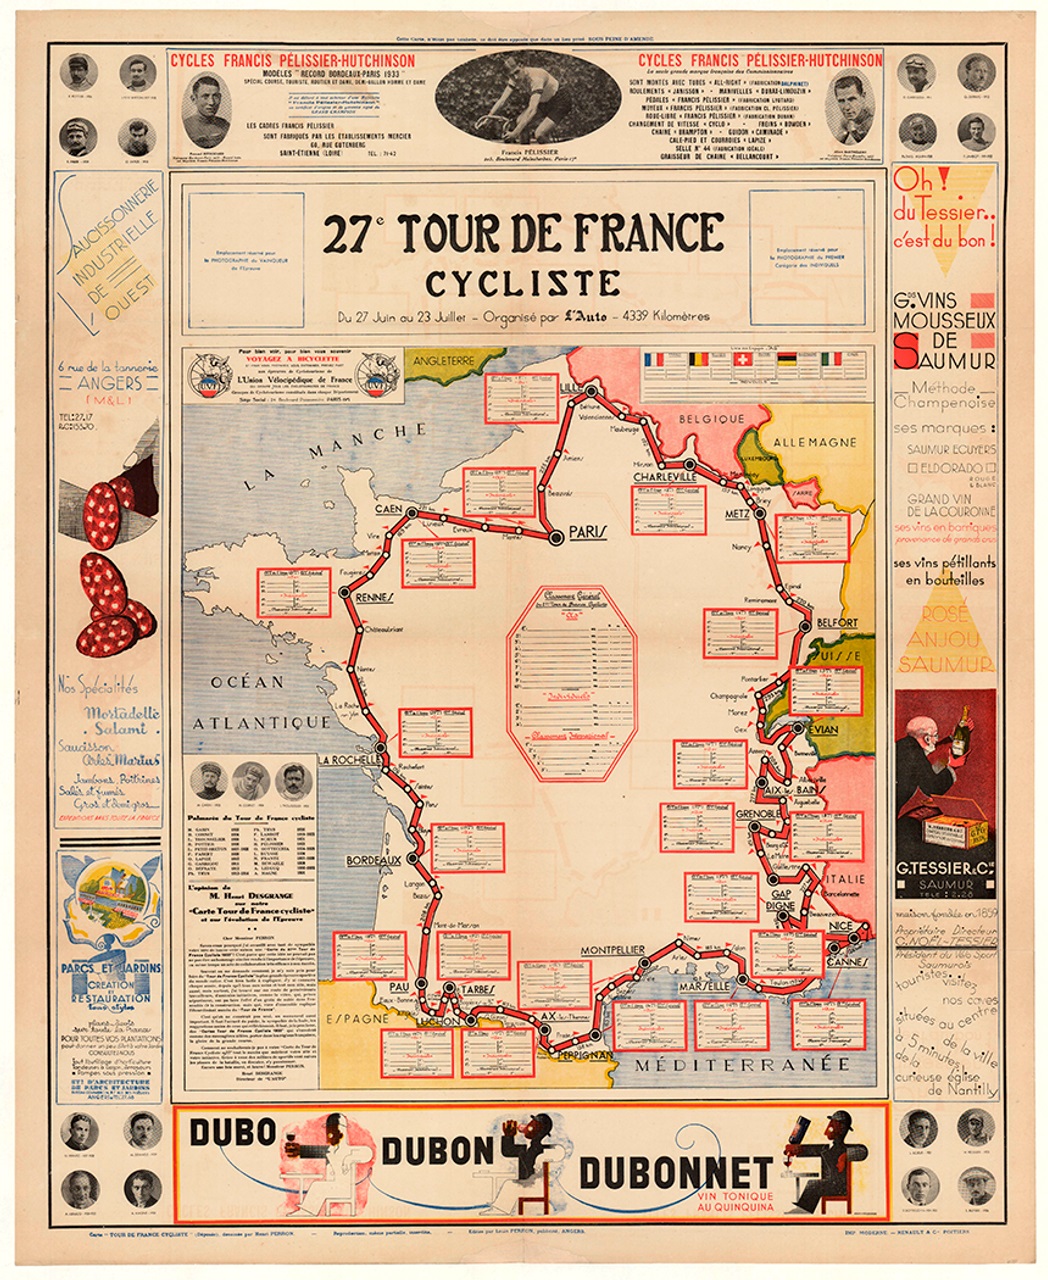 Mapa Tour de France 1933, plakát, autor neznámý, zdroj: vintagebicycleposters.com. V roce 1933 na Tour de France zvítězil jezdec Speicher z francouzské národní stáje. Tour tehdy trvala 23 dní a měla délku neuvěřitelných 4395 kilometrů.